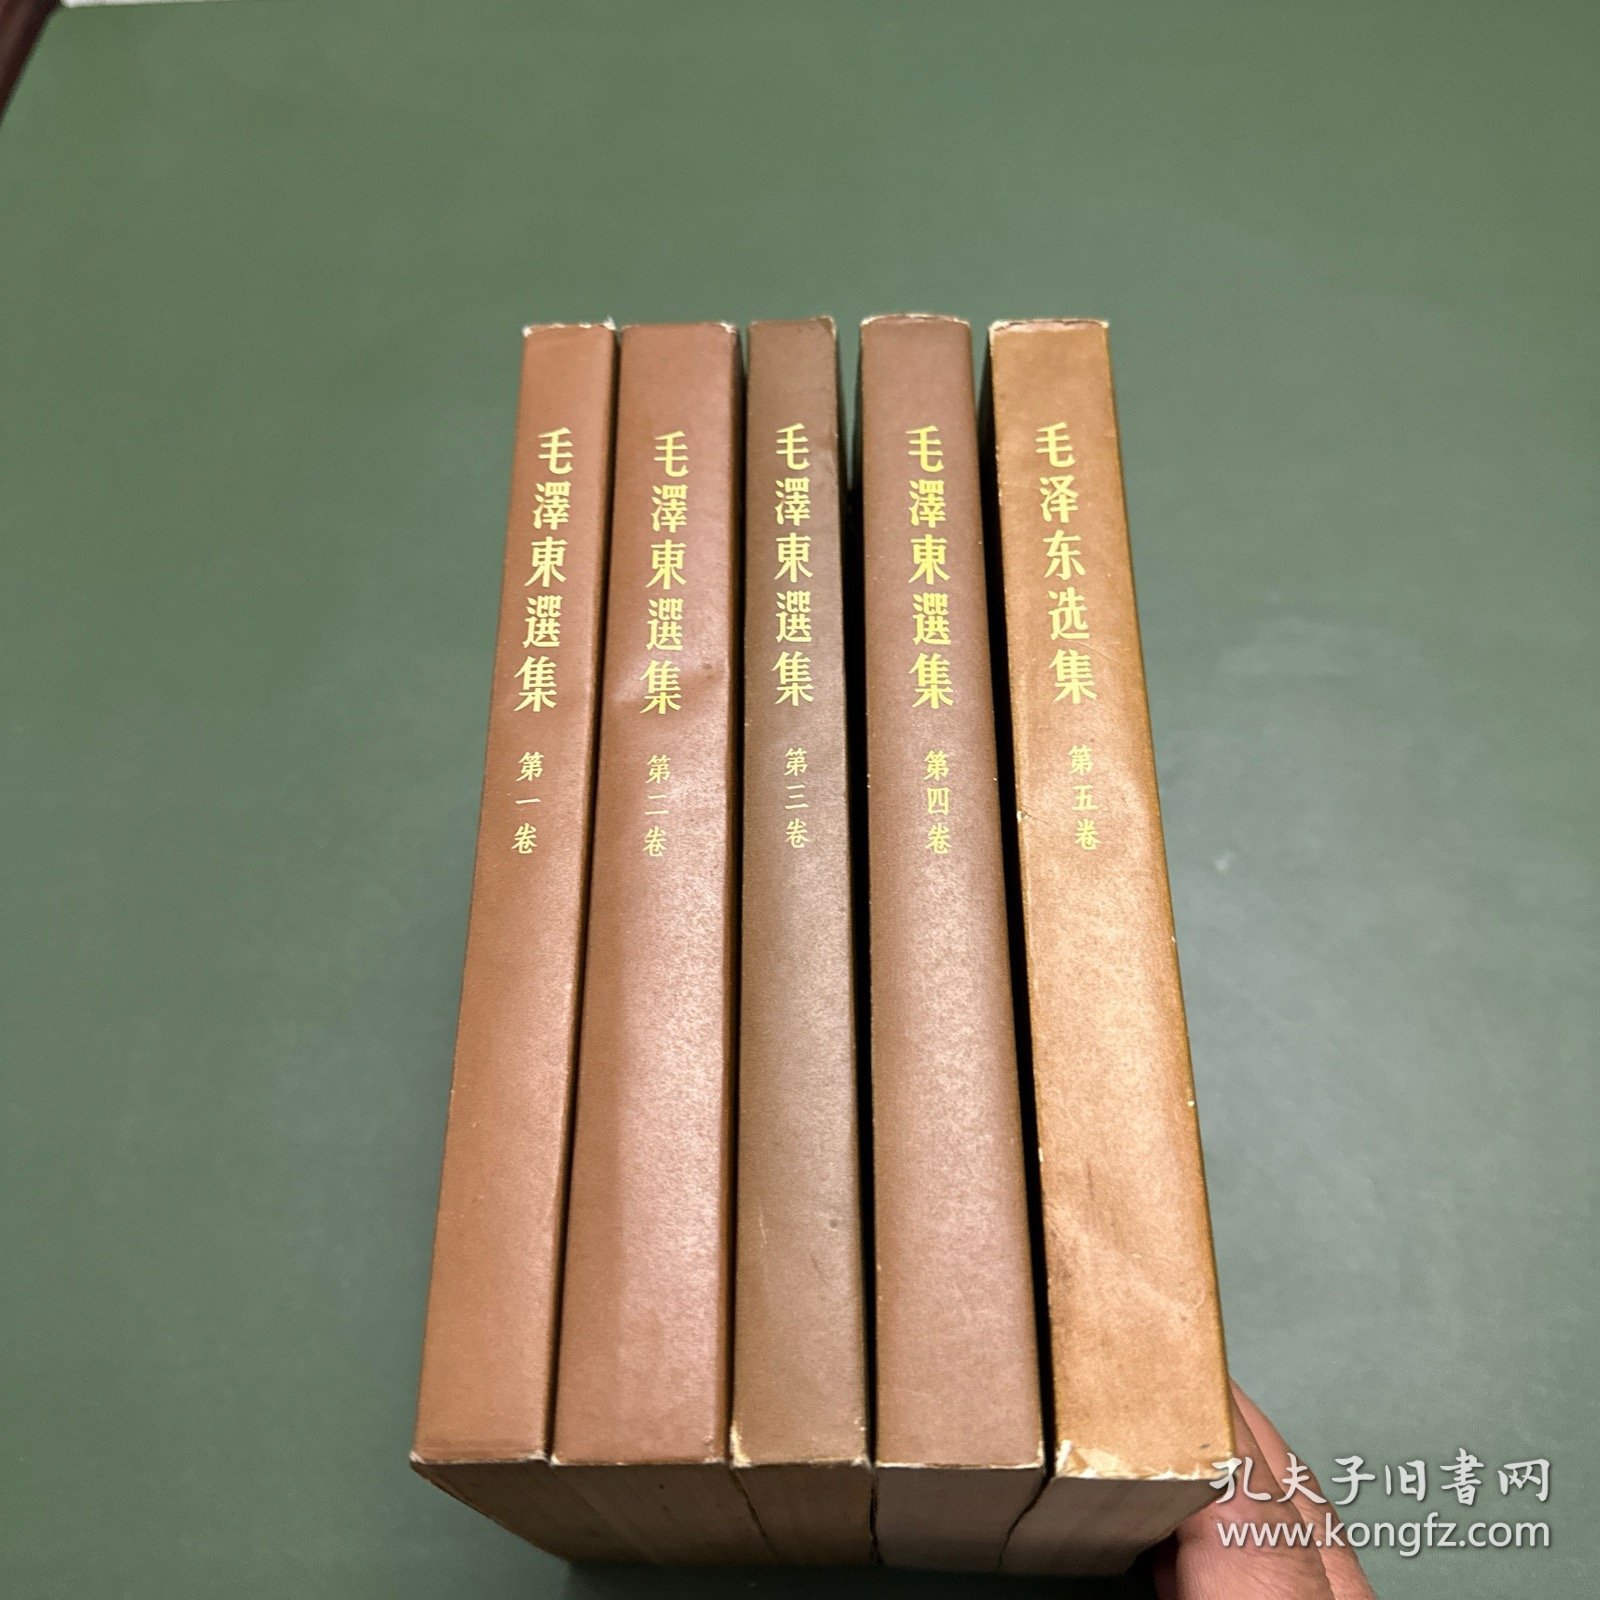 《毛泽东选集》五册全，1-4卷为繁体竖版，第5卷为简版。第一卷1952年二版1952年上海四印，第二卷1952年二版1952年上海二印，第三卷1953年二版1953年上海二印，第四卷1960年一版1960年上海一印，第五卷1977年一版1977年上海一印。